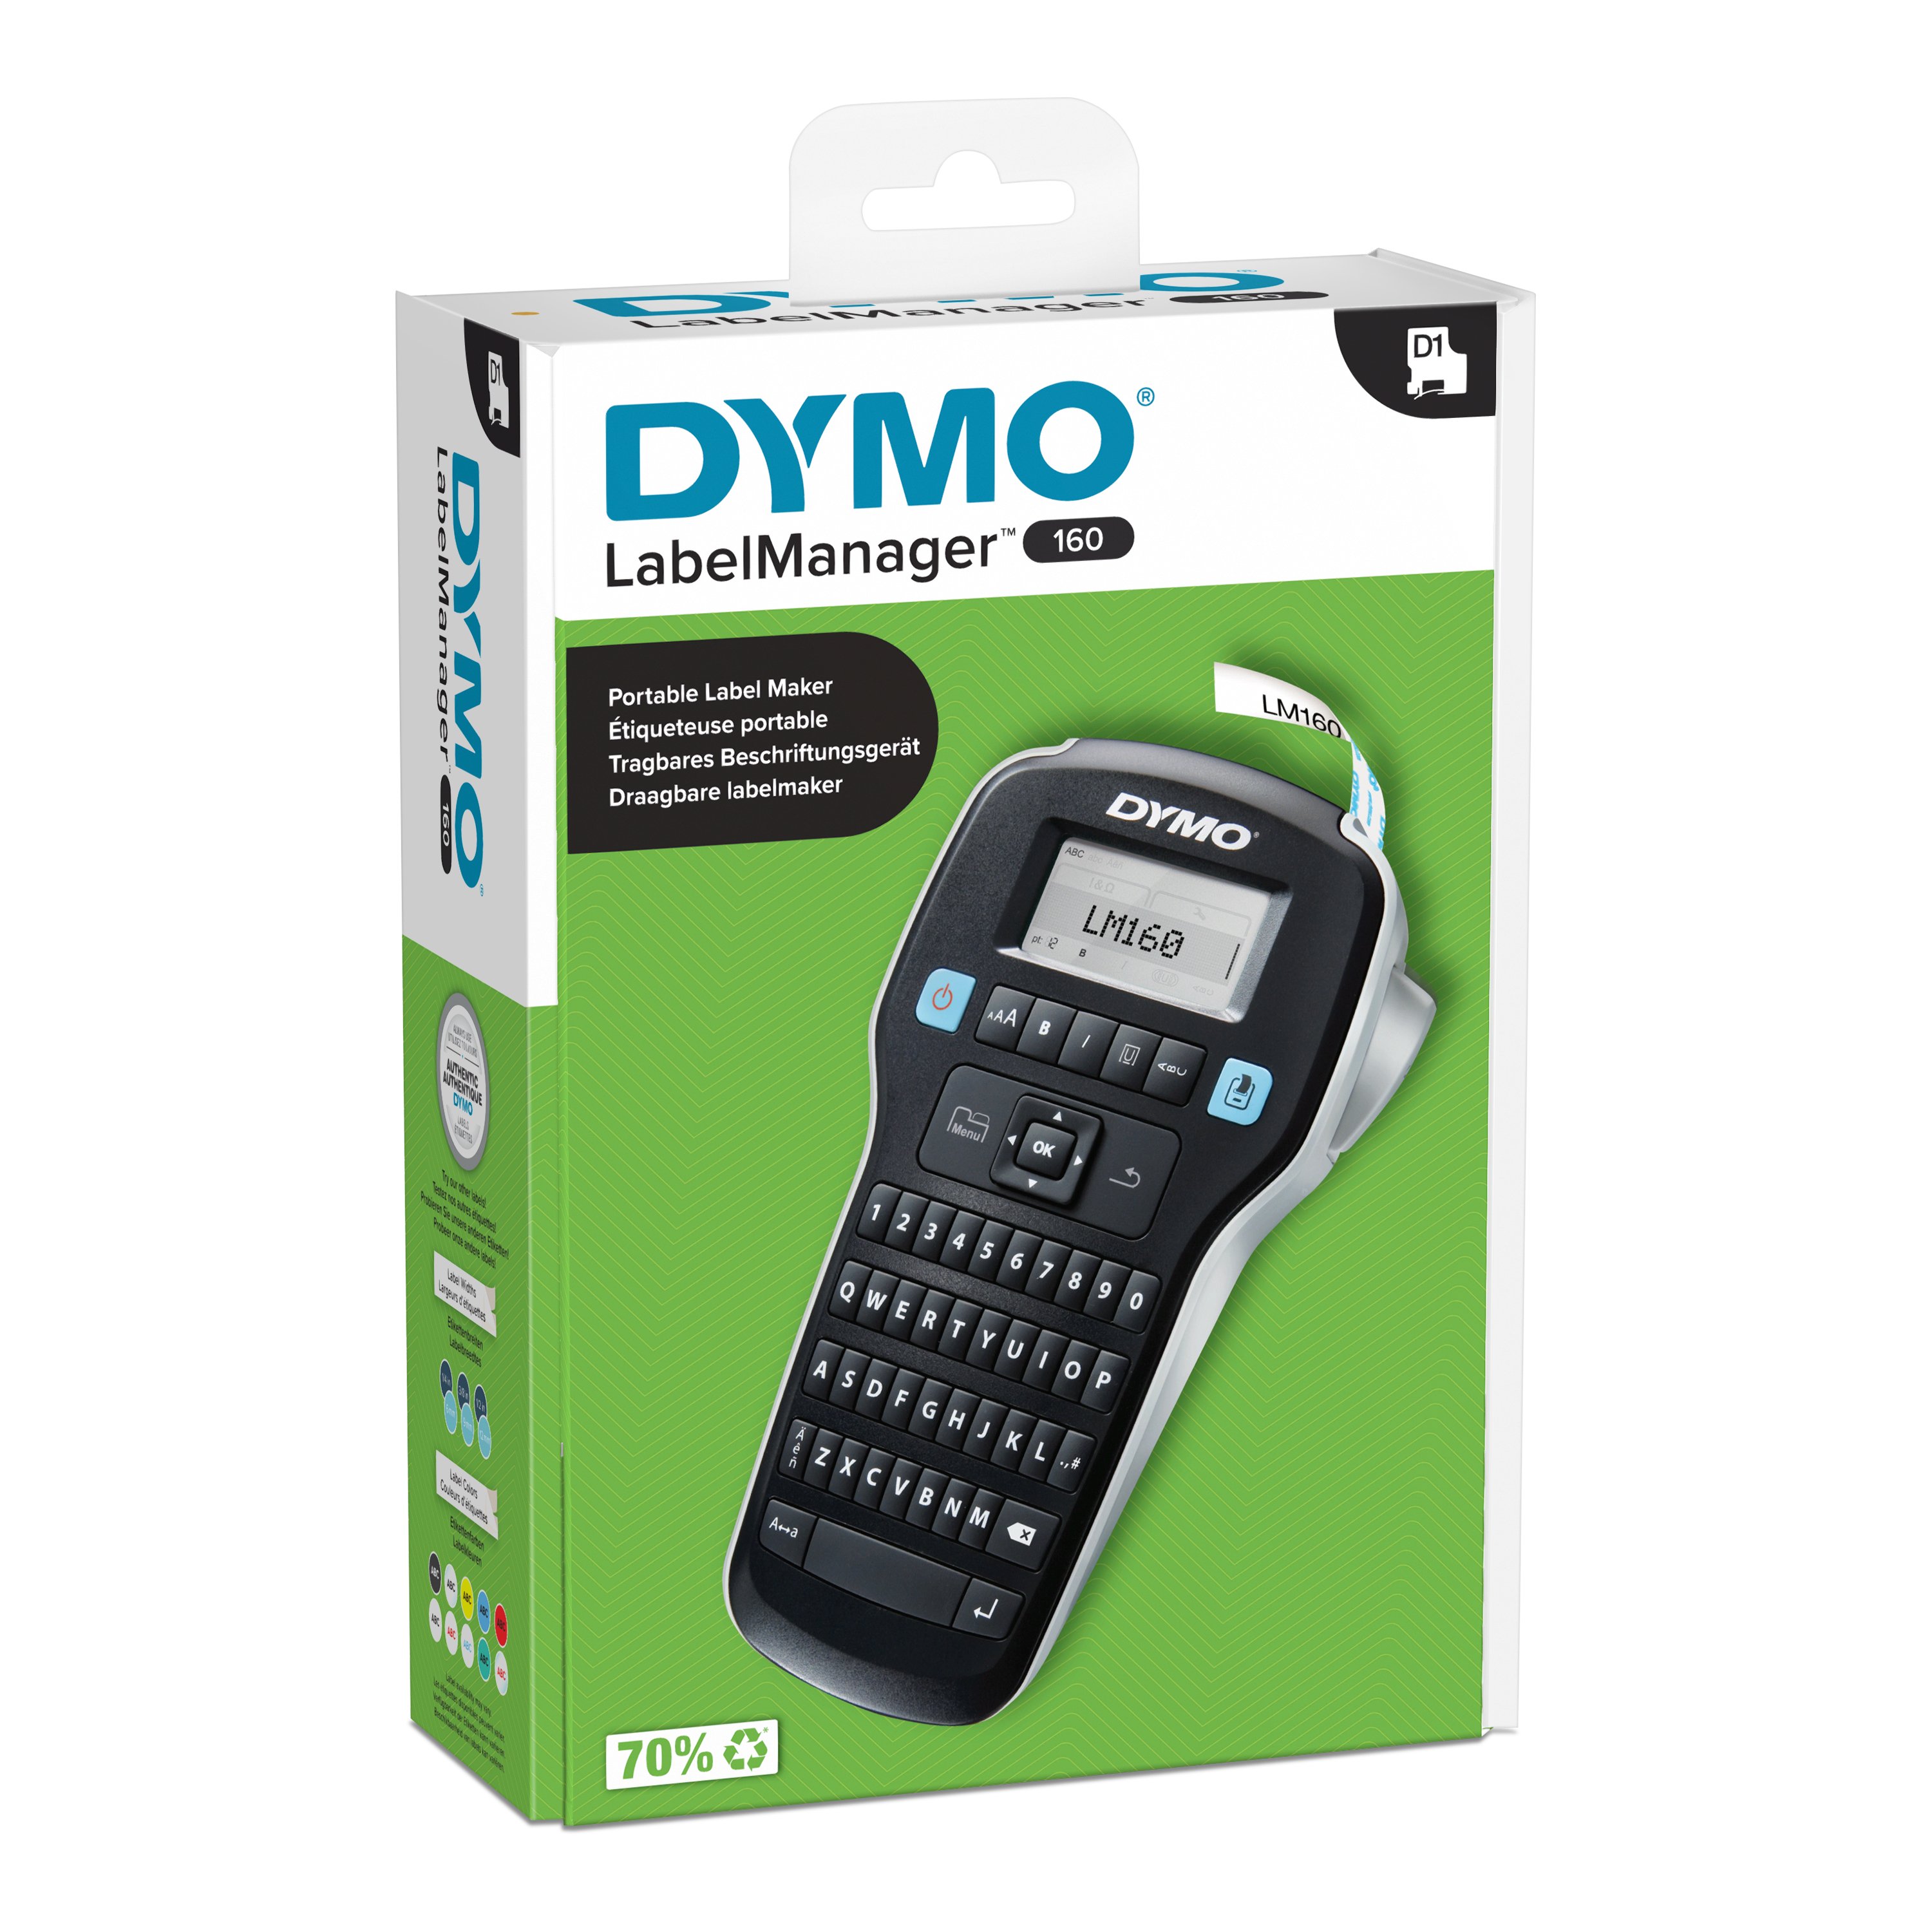 DYMO - LabelManager™ 160 Label maker Qwerty (2174612) - Kontor og skoleutstyr